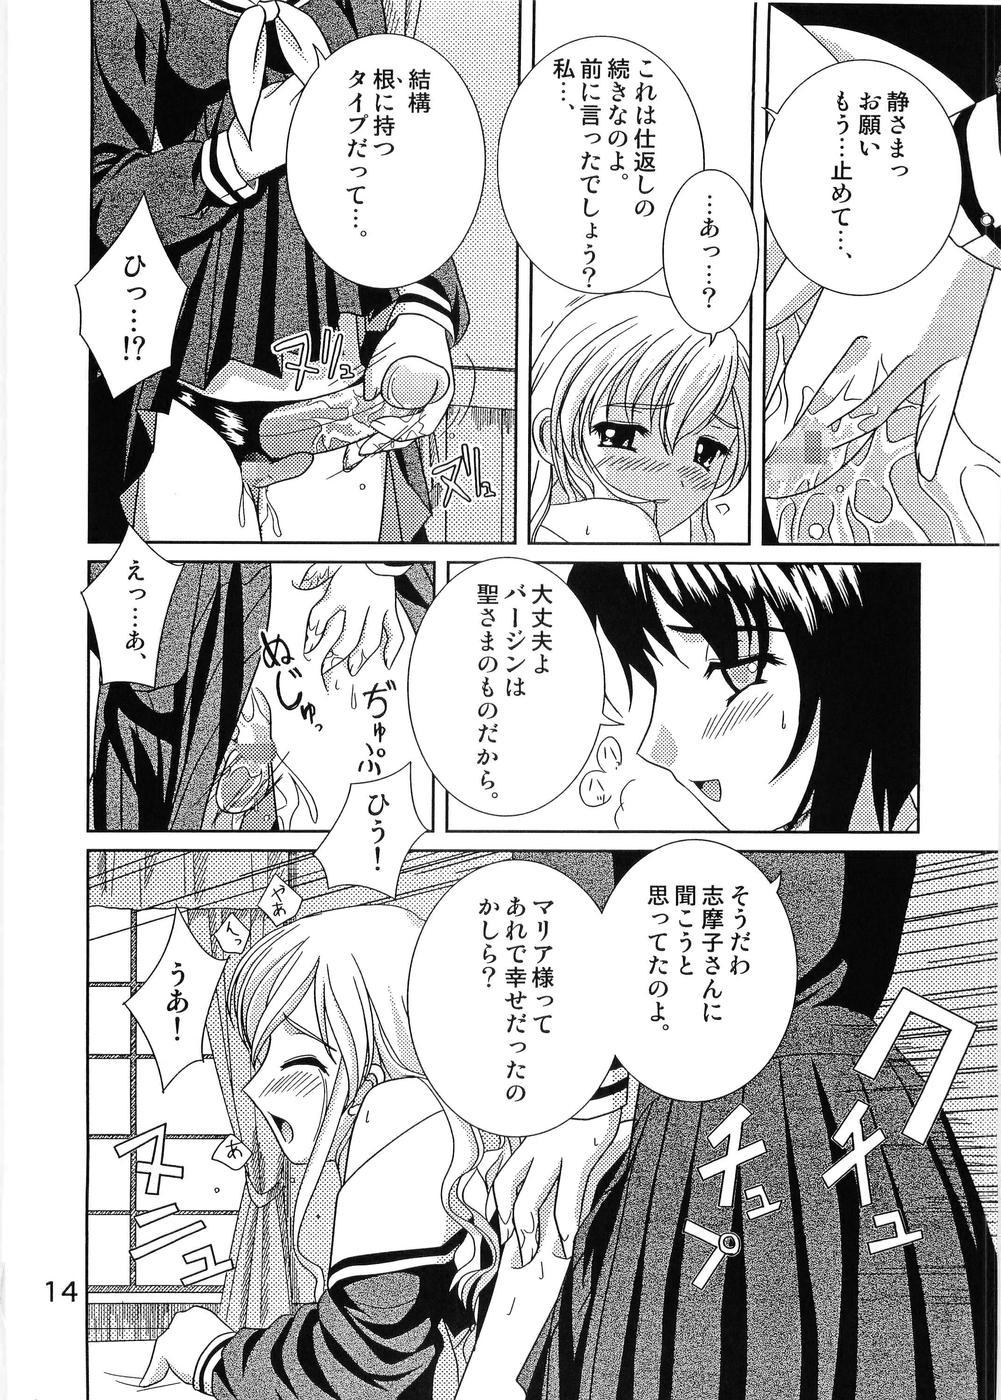 Ink Shirobara Ehon - Maria-sama ga miteru Game - Page 13